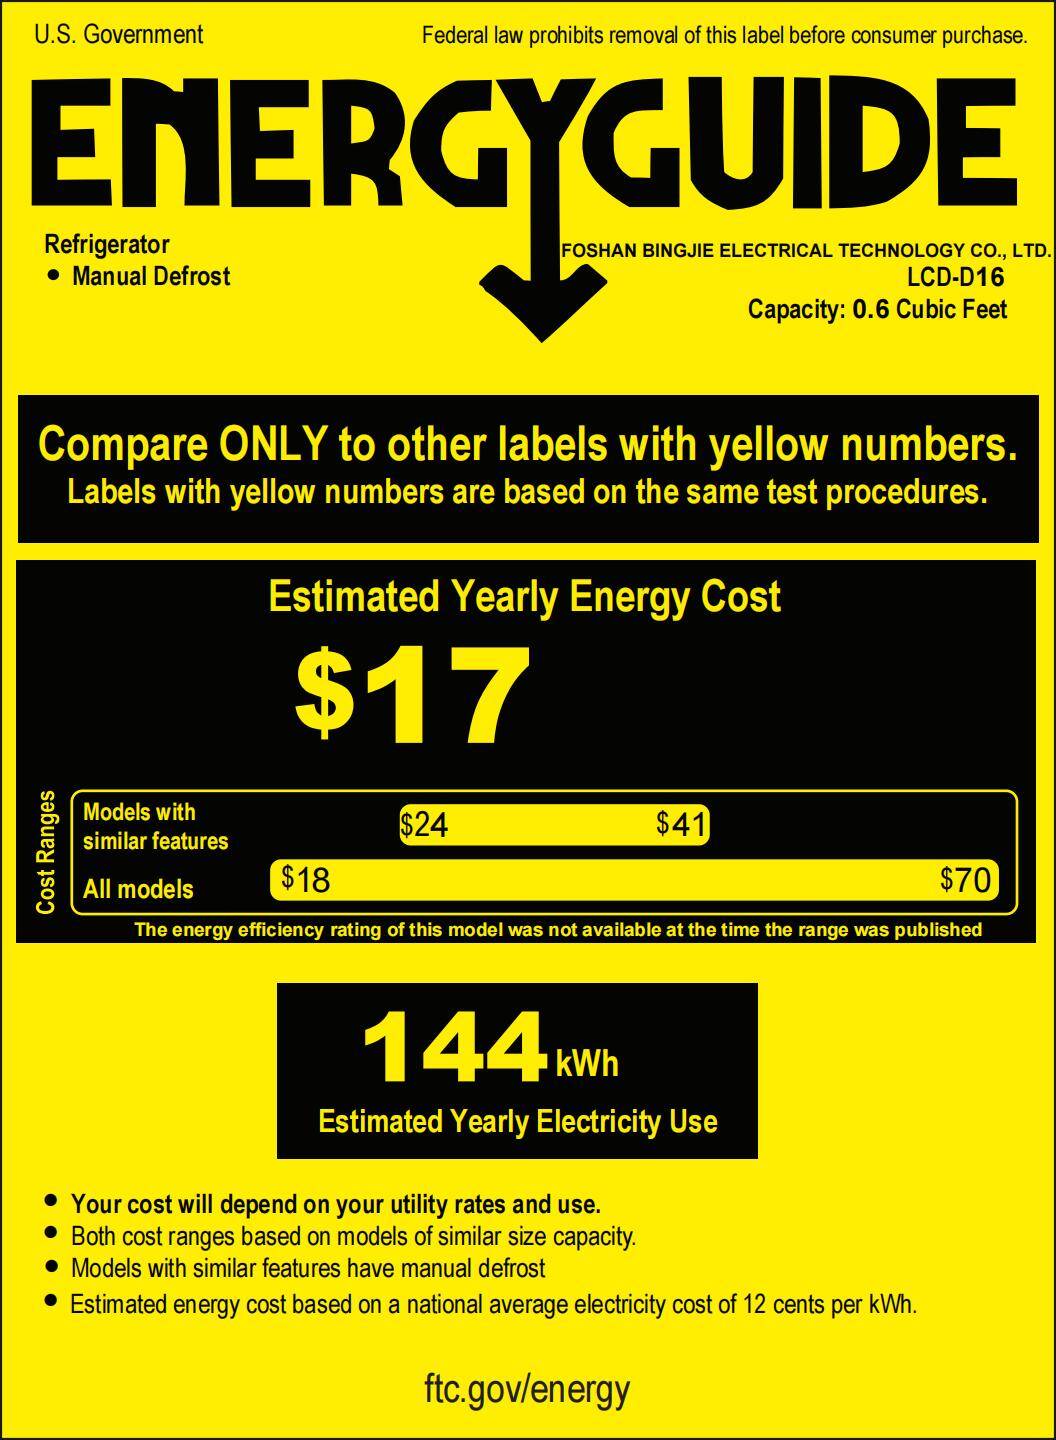 Product Energy Guide_EGUS.jpg